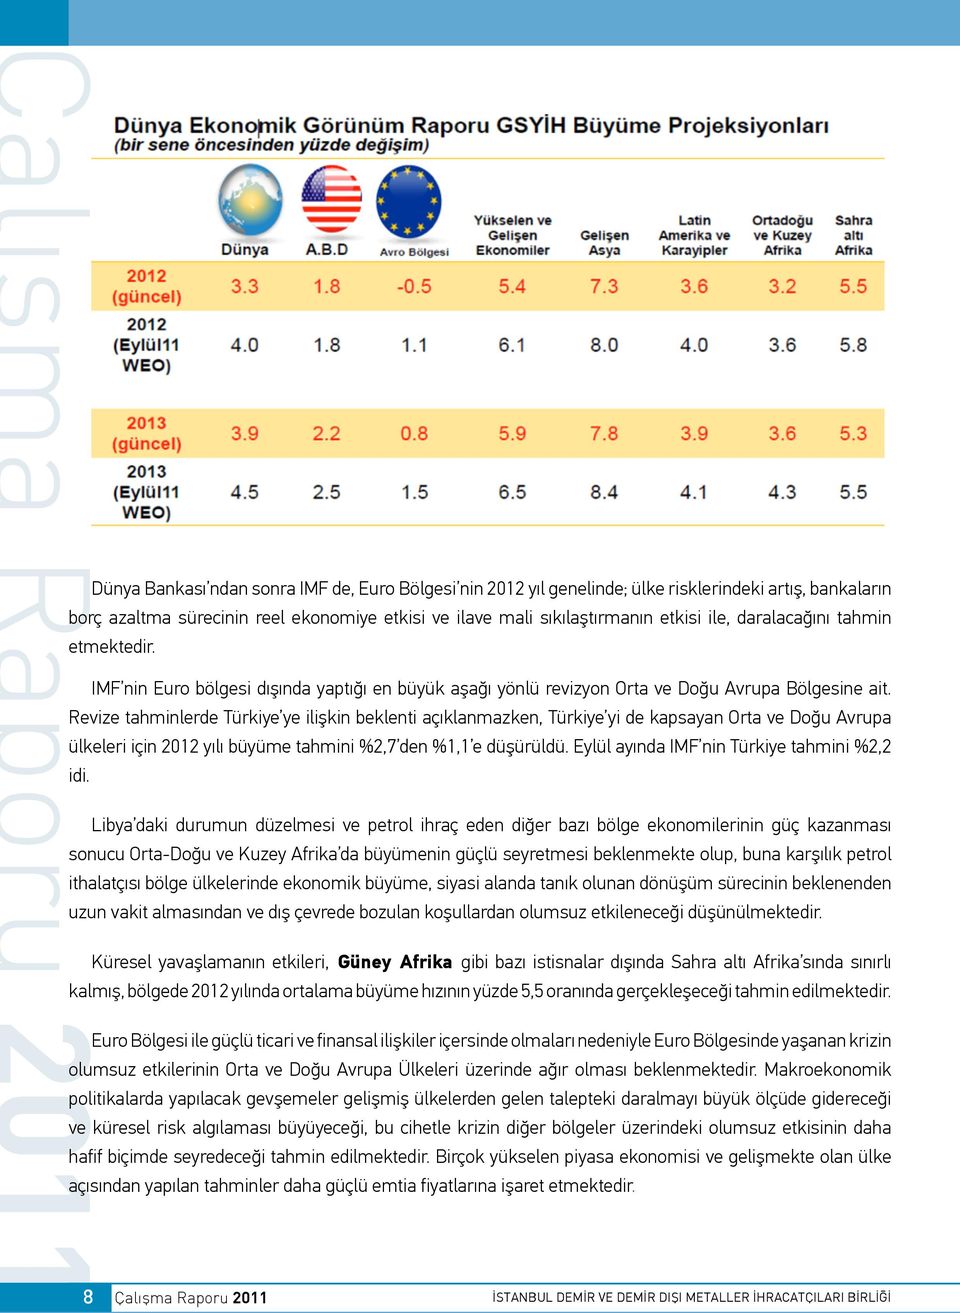 Revize tahminlerde Türkiye ye ilişkin beklenti açıklanmazken, Türkiye yi de kapsayan Orta ve Doğu Avrupa ülkeleri için 2012 yılı büyüme tahmini %2,7 den %1,1 e düşürüldü.